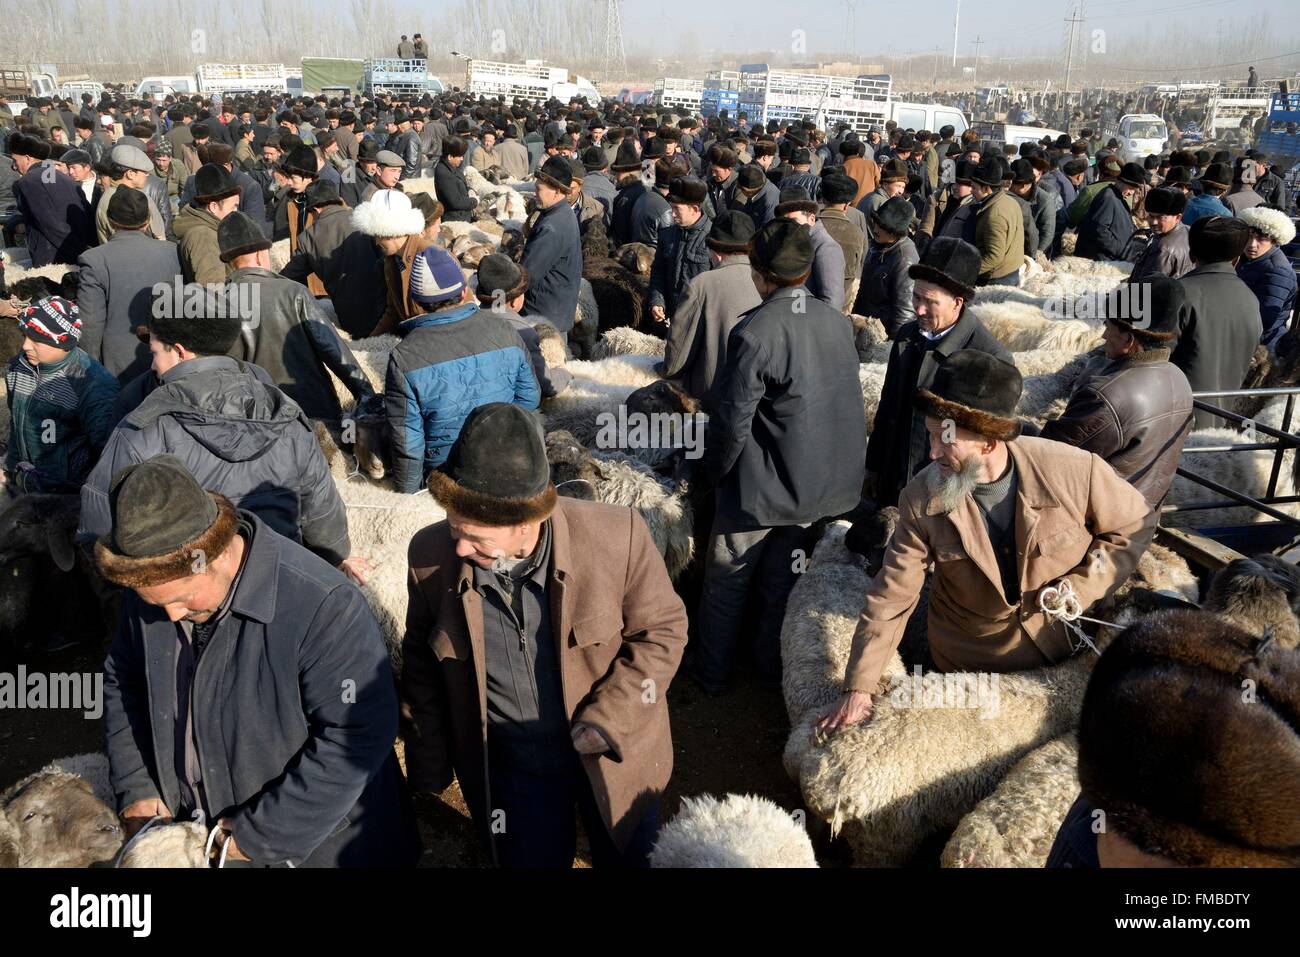 La Chine, la région autonome ouïghoure du Xinjiang, Kashgar (Kashi), dimanche sur le marché de l'élevage Banque D'Images